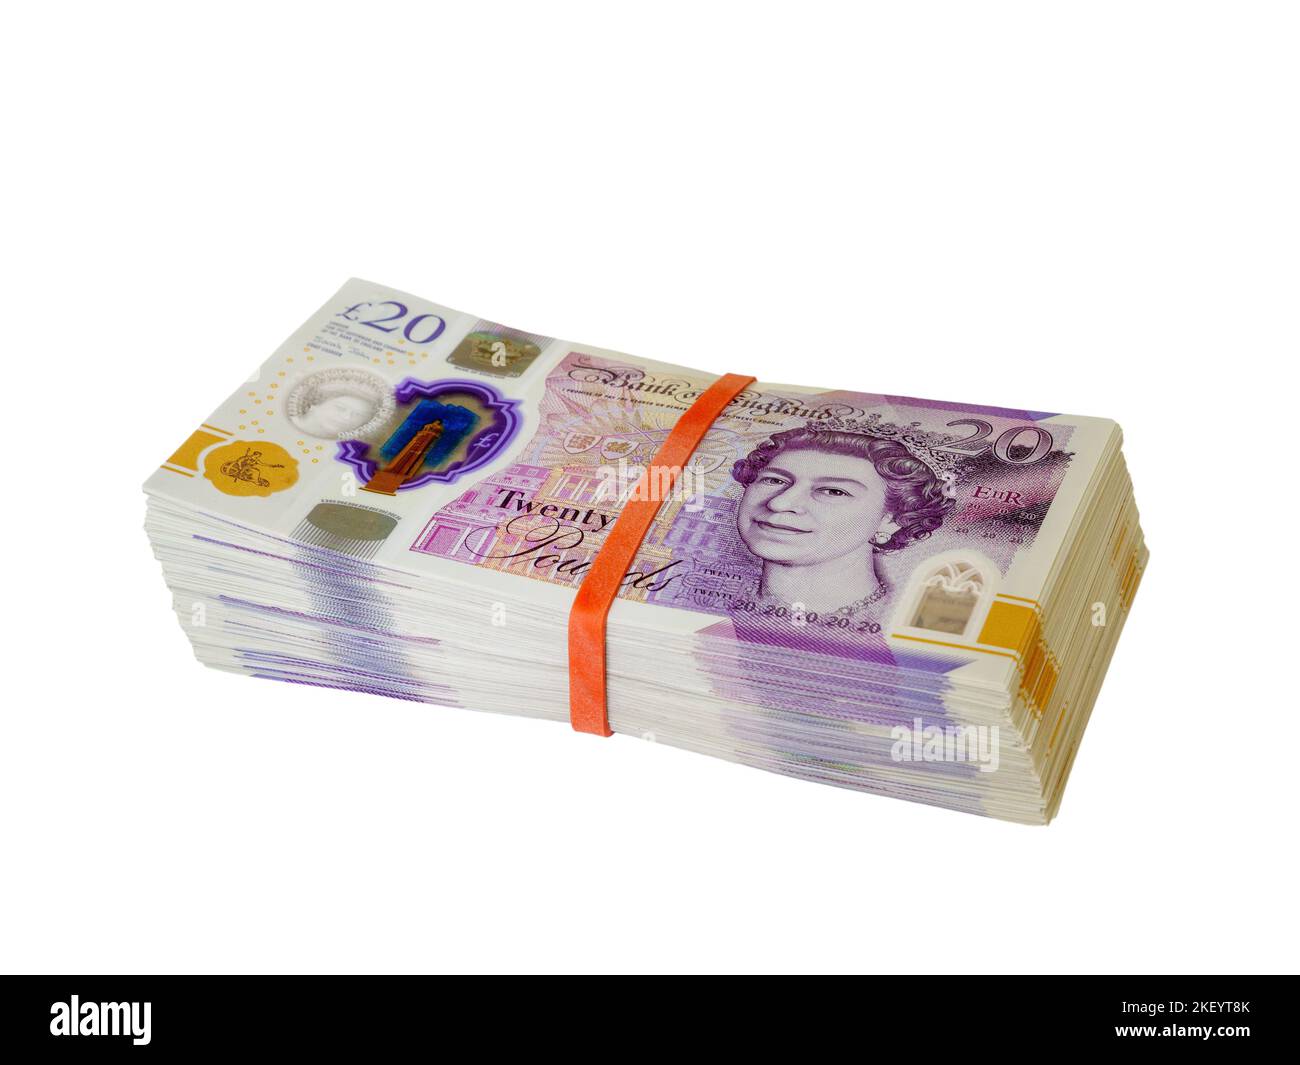 Grande pila di soldi sotto forma di banconote da 20 sterline britanniche che ammontano a migliaia di dollari in contanti contro uno sfondo bianco ritagliato Foto Stock